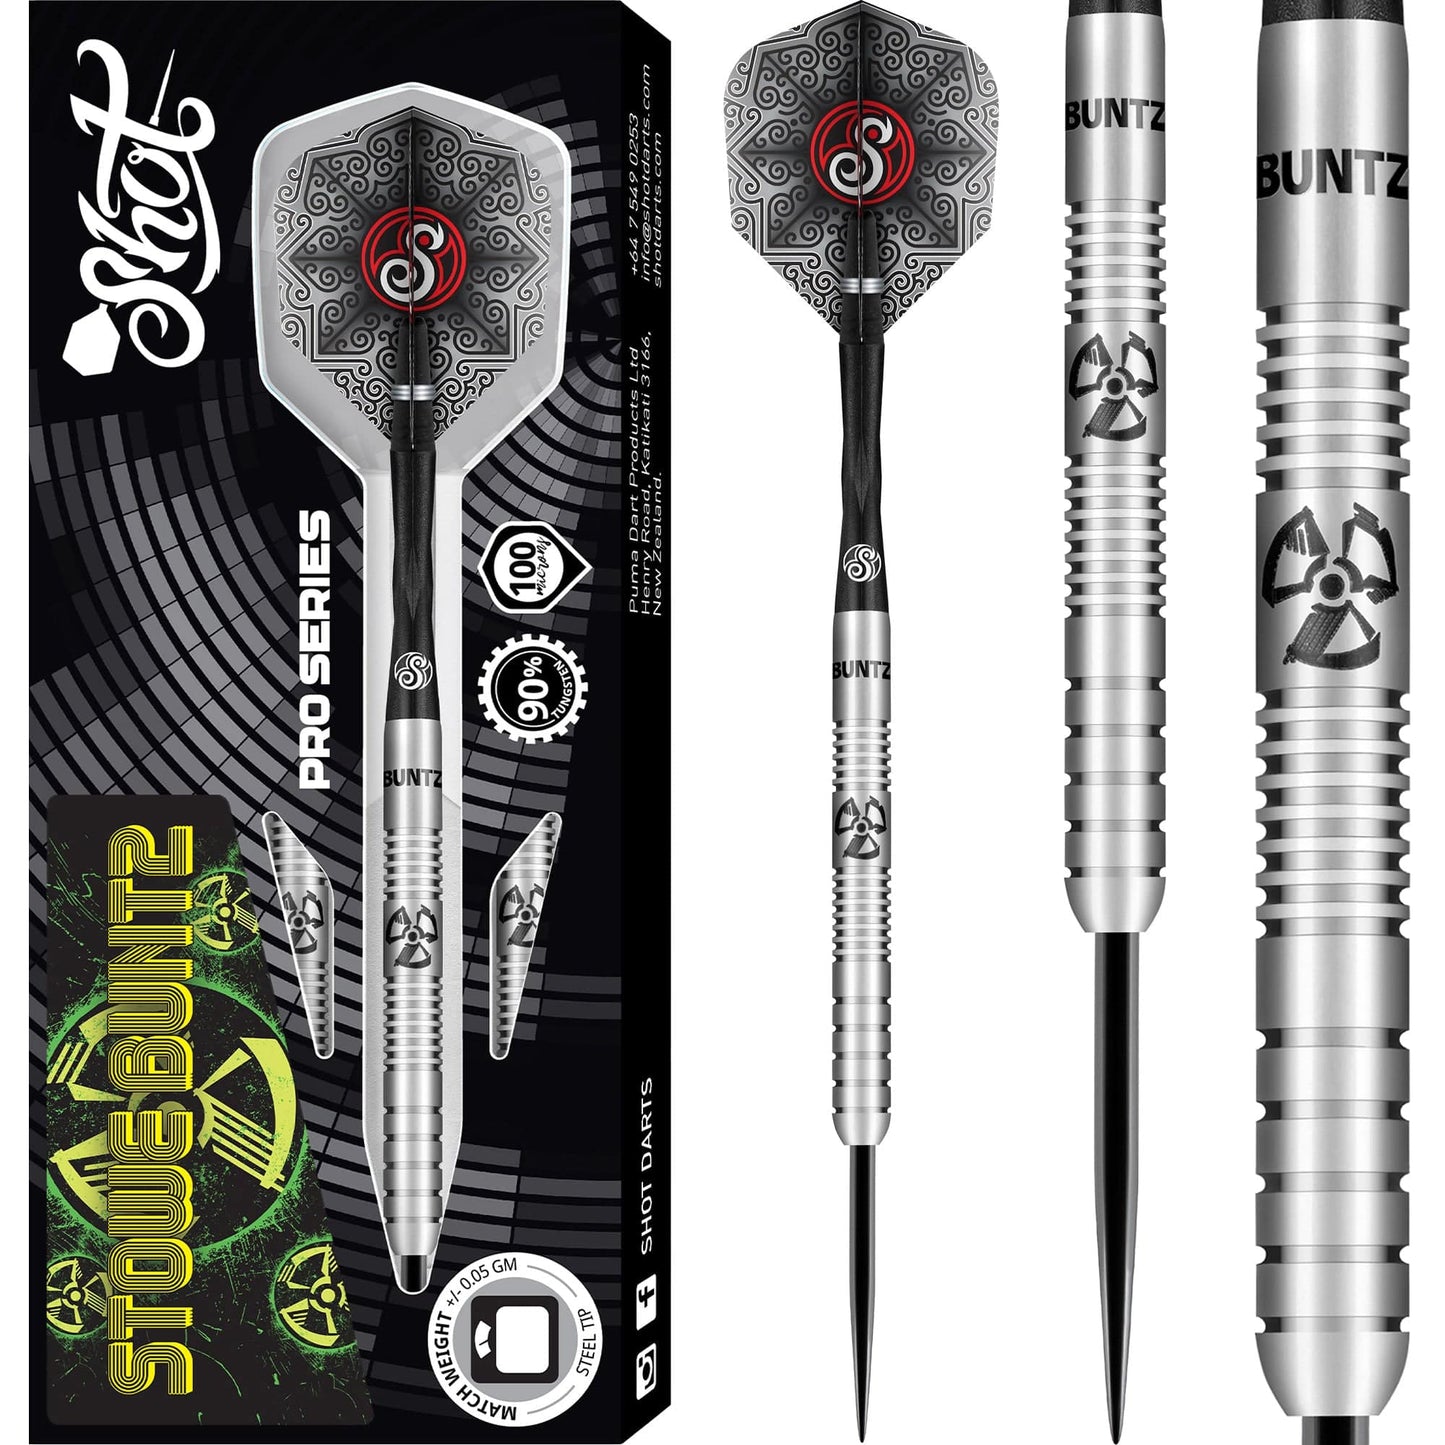 Shot Stowe Buntz Darts - Steel Tip - 90% - Pro Series 23g